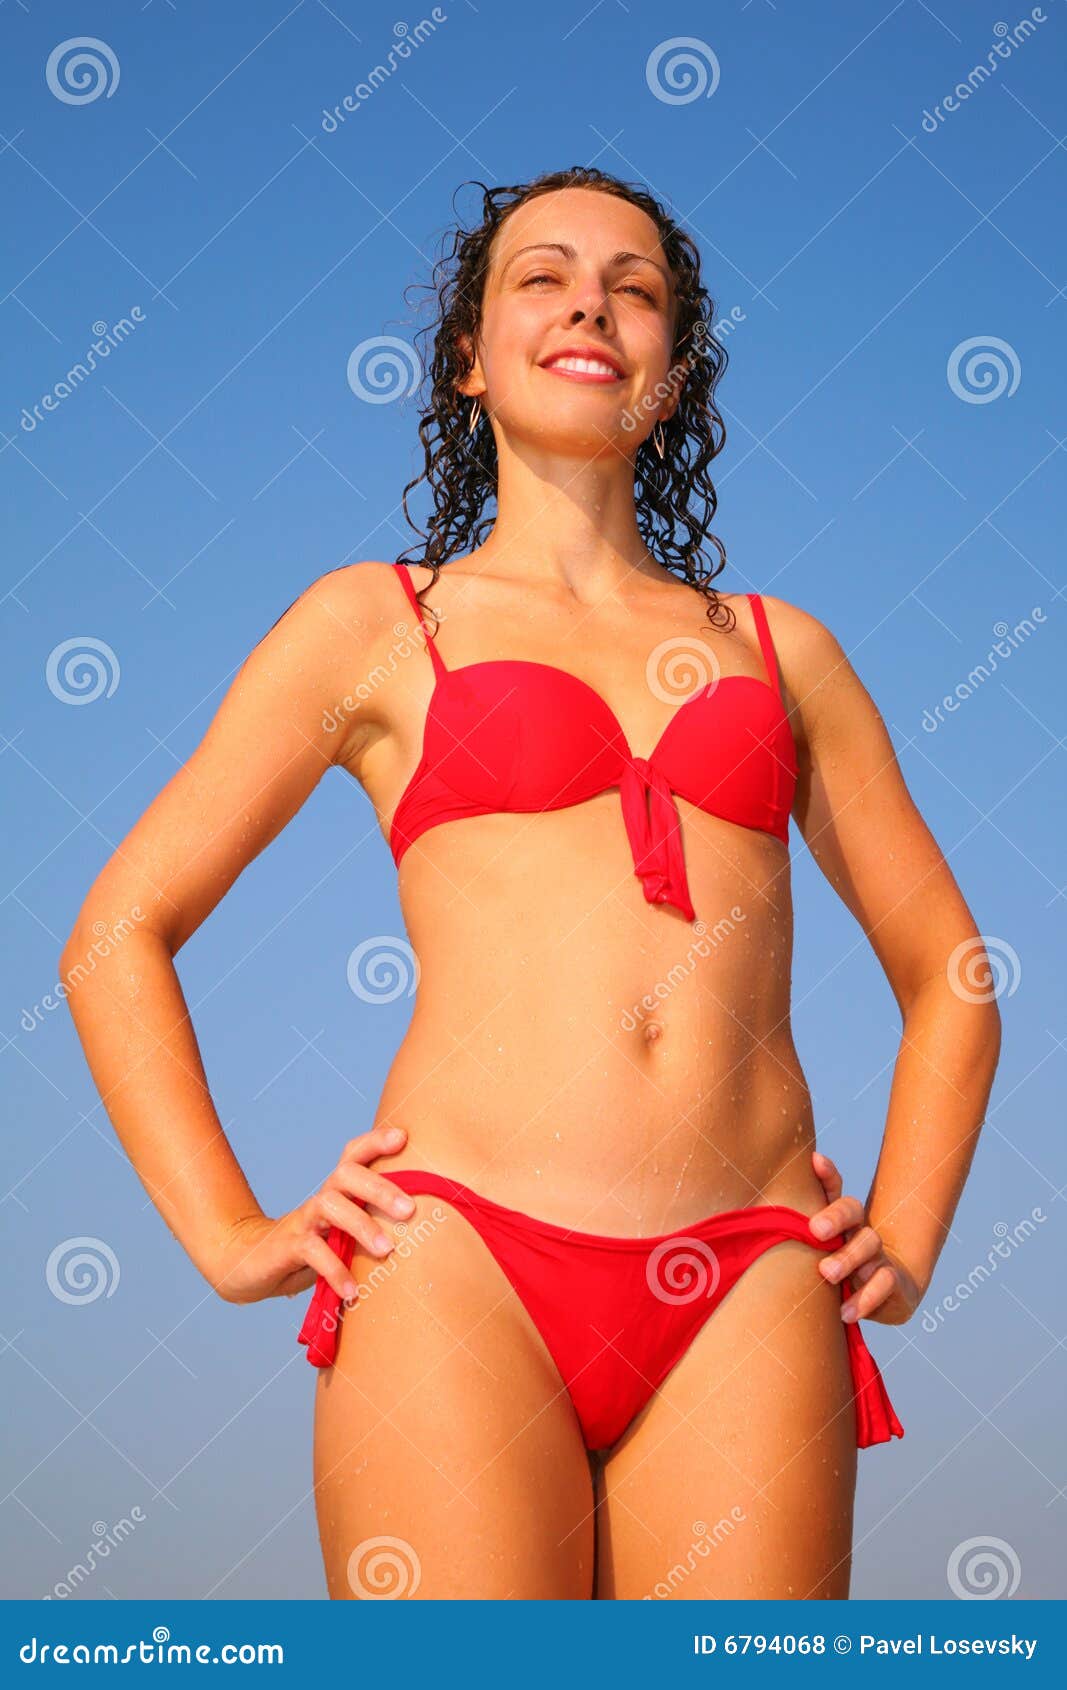 Lady in Red Bikini